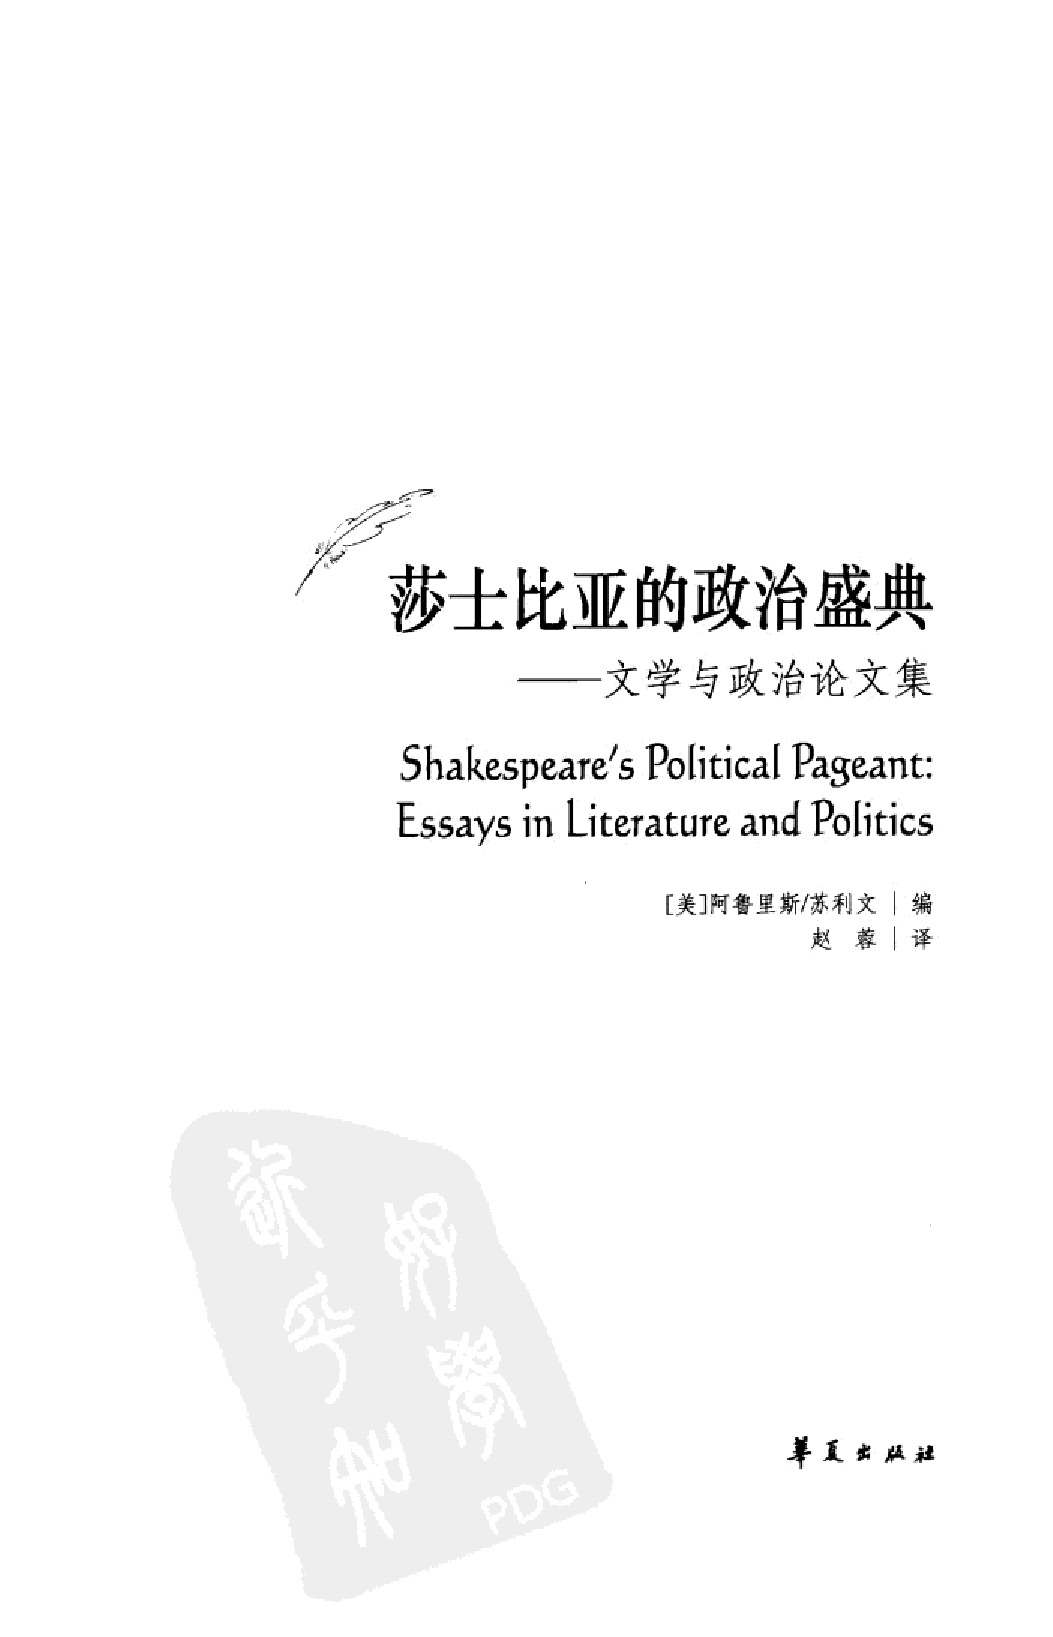 《莎士比亚的政治盛典》.华夏出版社2011